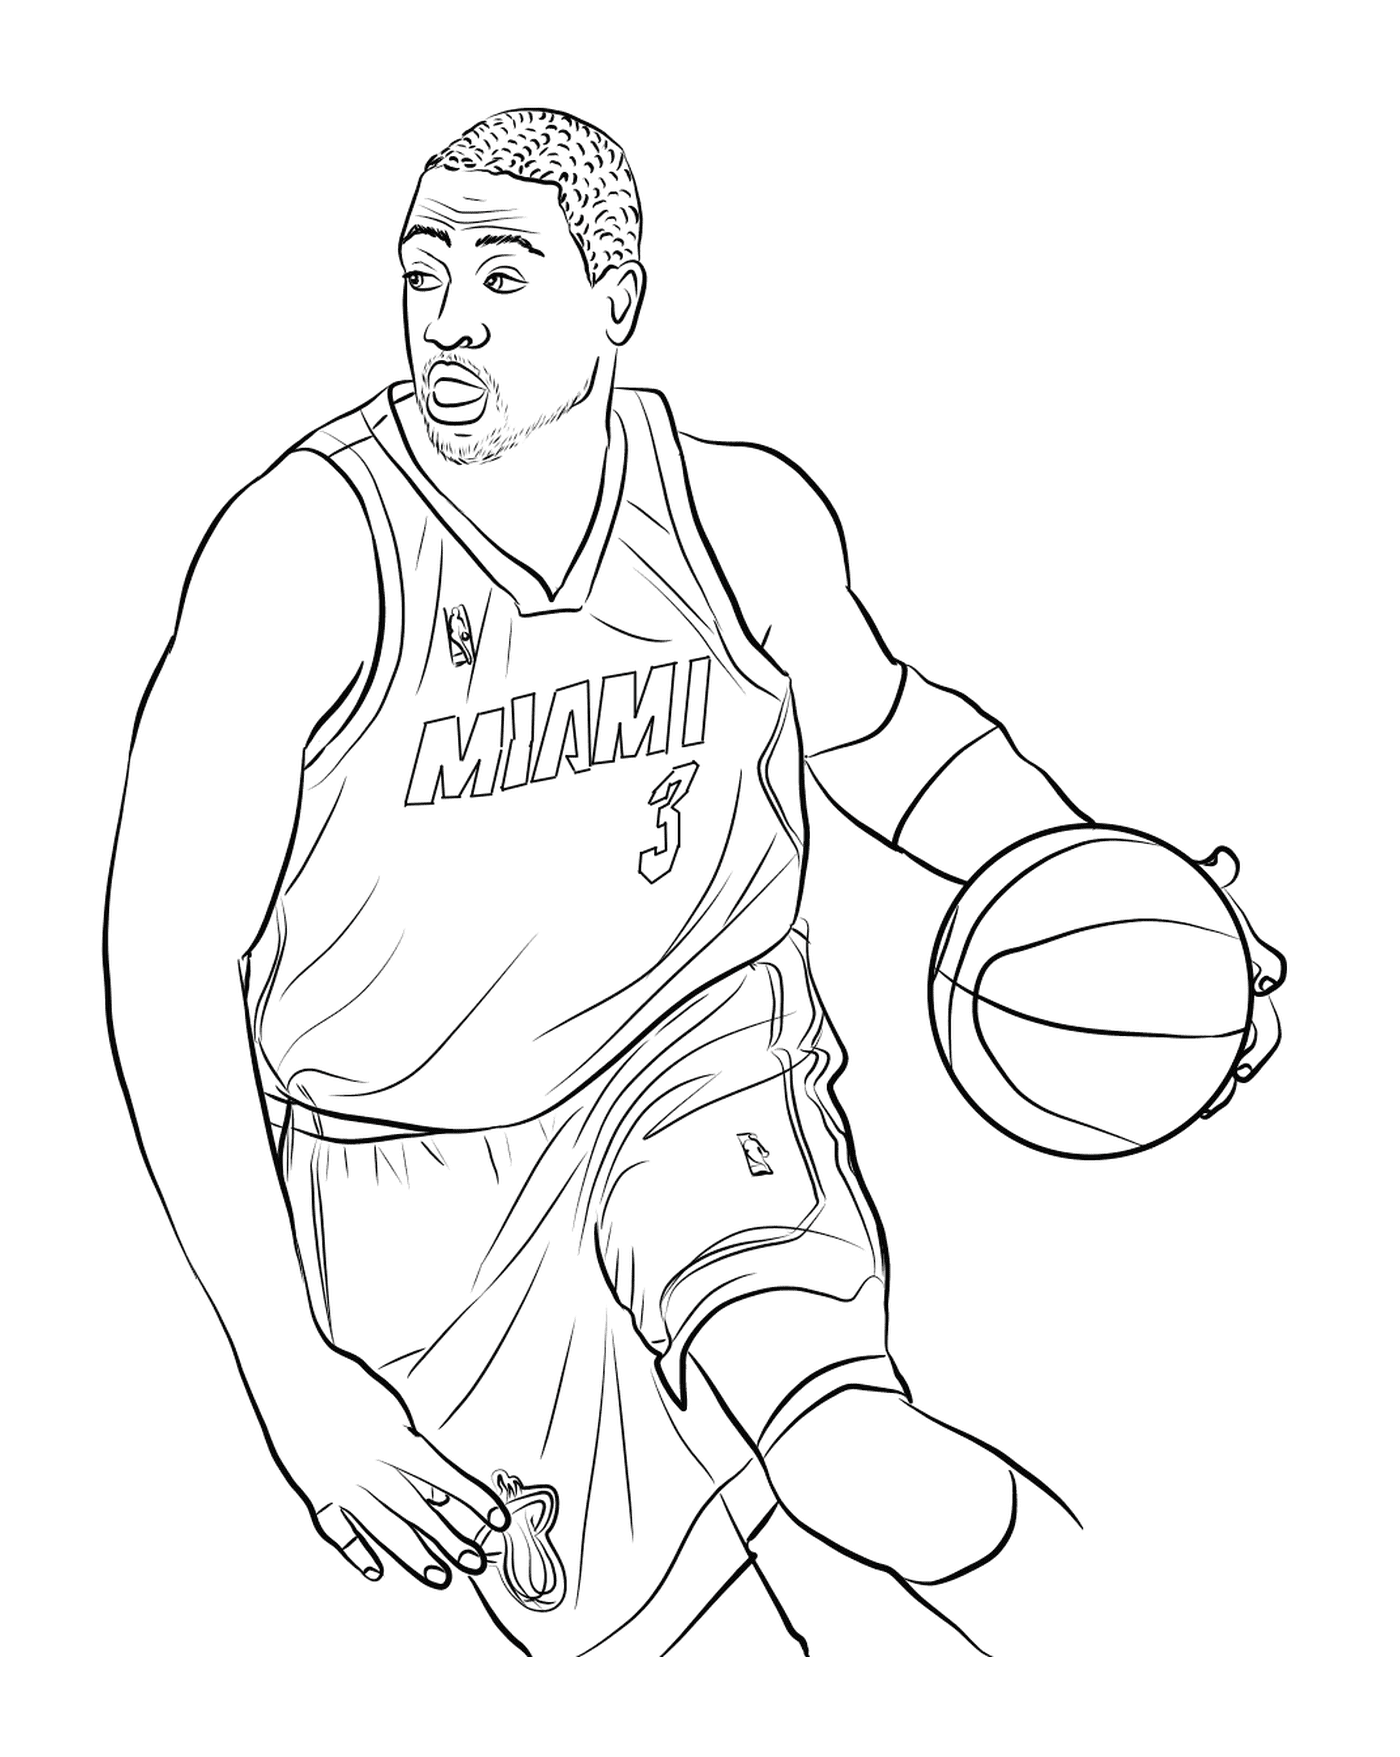  Дуэйн Уэйд держит баскетбольный мяч 